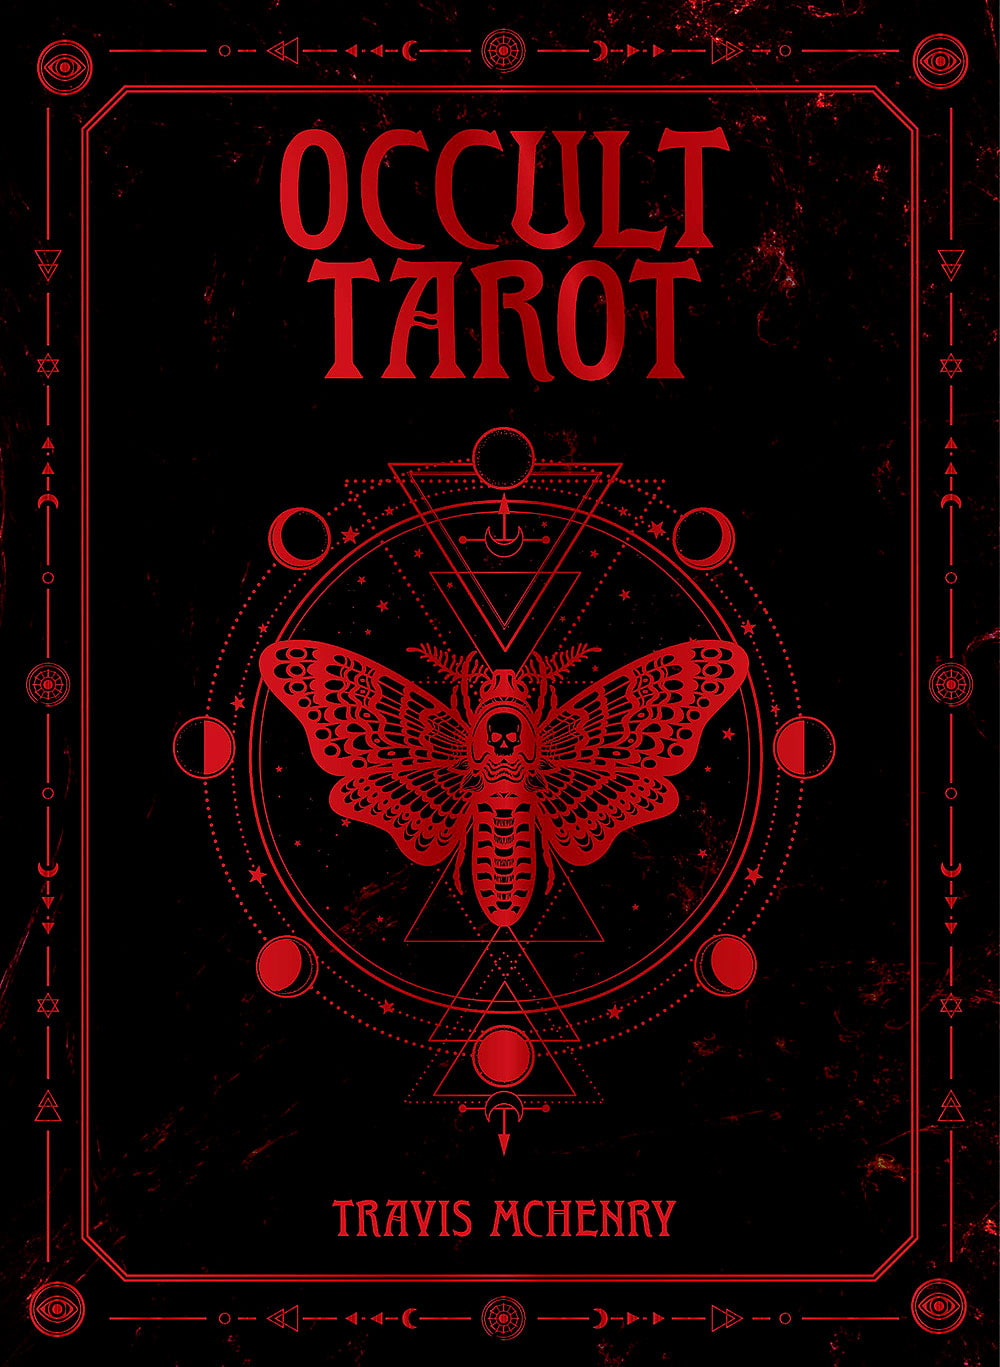 【送料無料】 オカルトタロット Occult Tarot / オラクルカード 占い カード占い ROCKPOOL ルノルマン コーヒーカード インド 本 印刷物